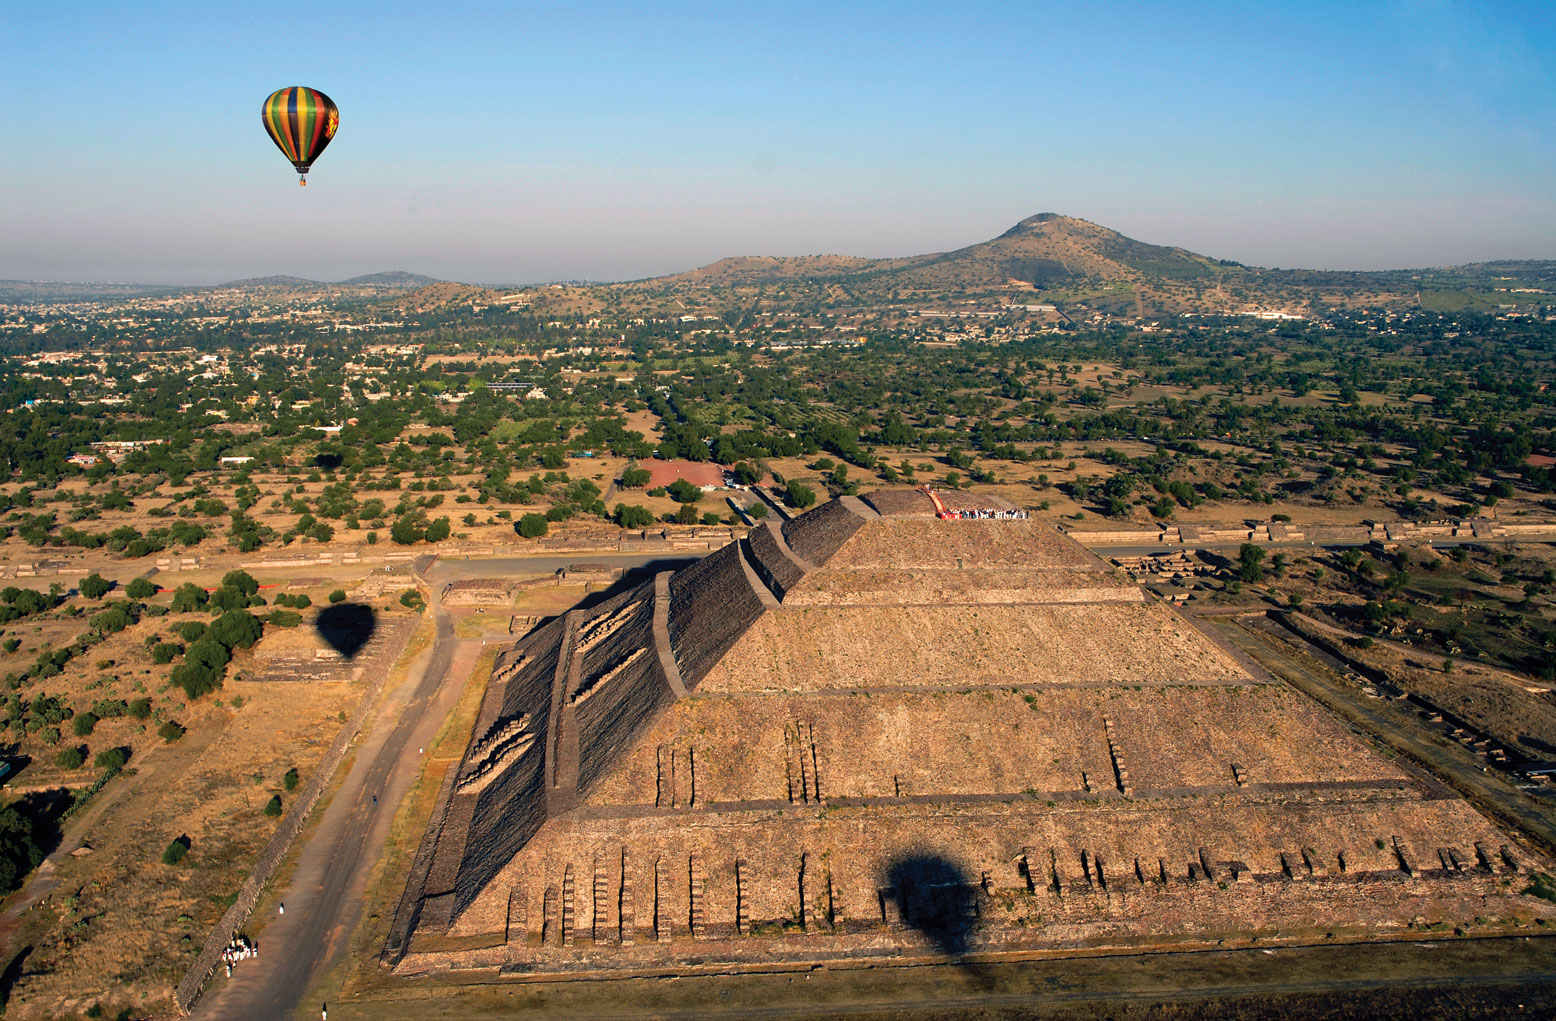 Un globo aerostático sobrevolando las pirámides de Teotihuacán.